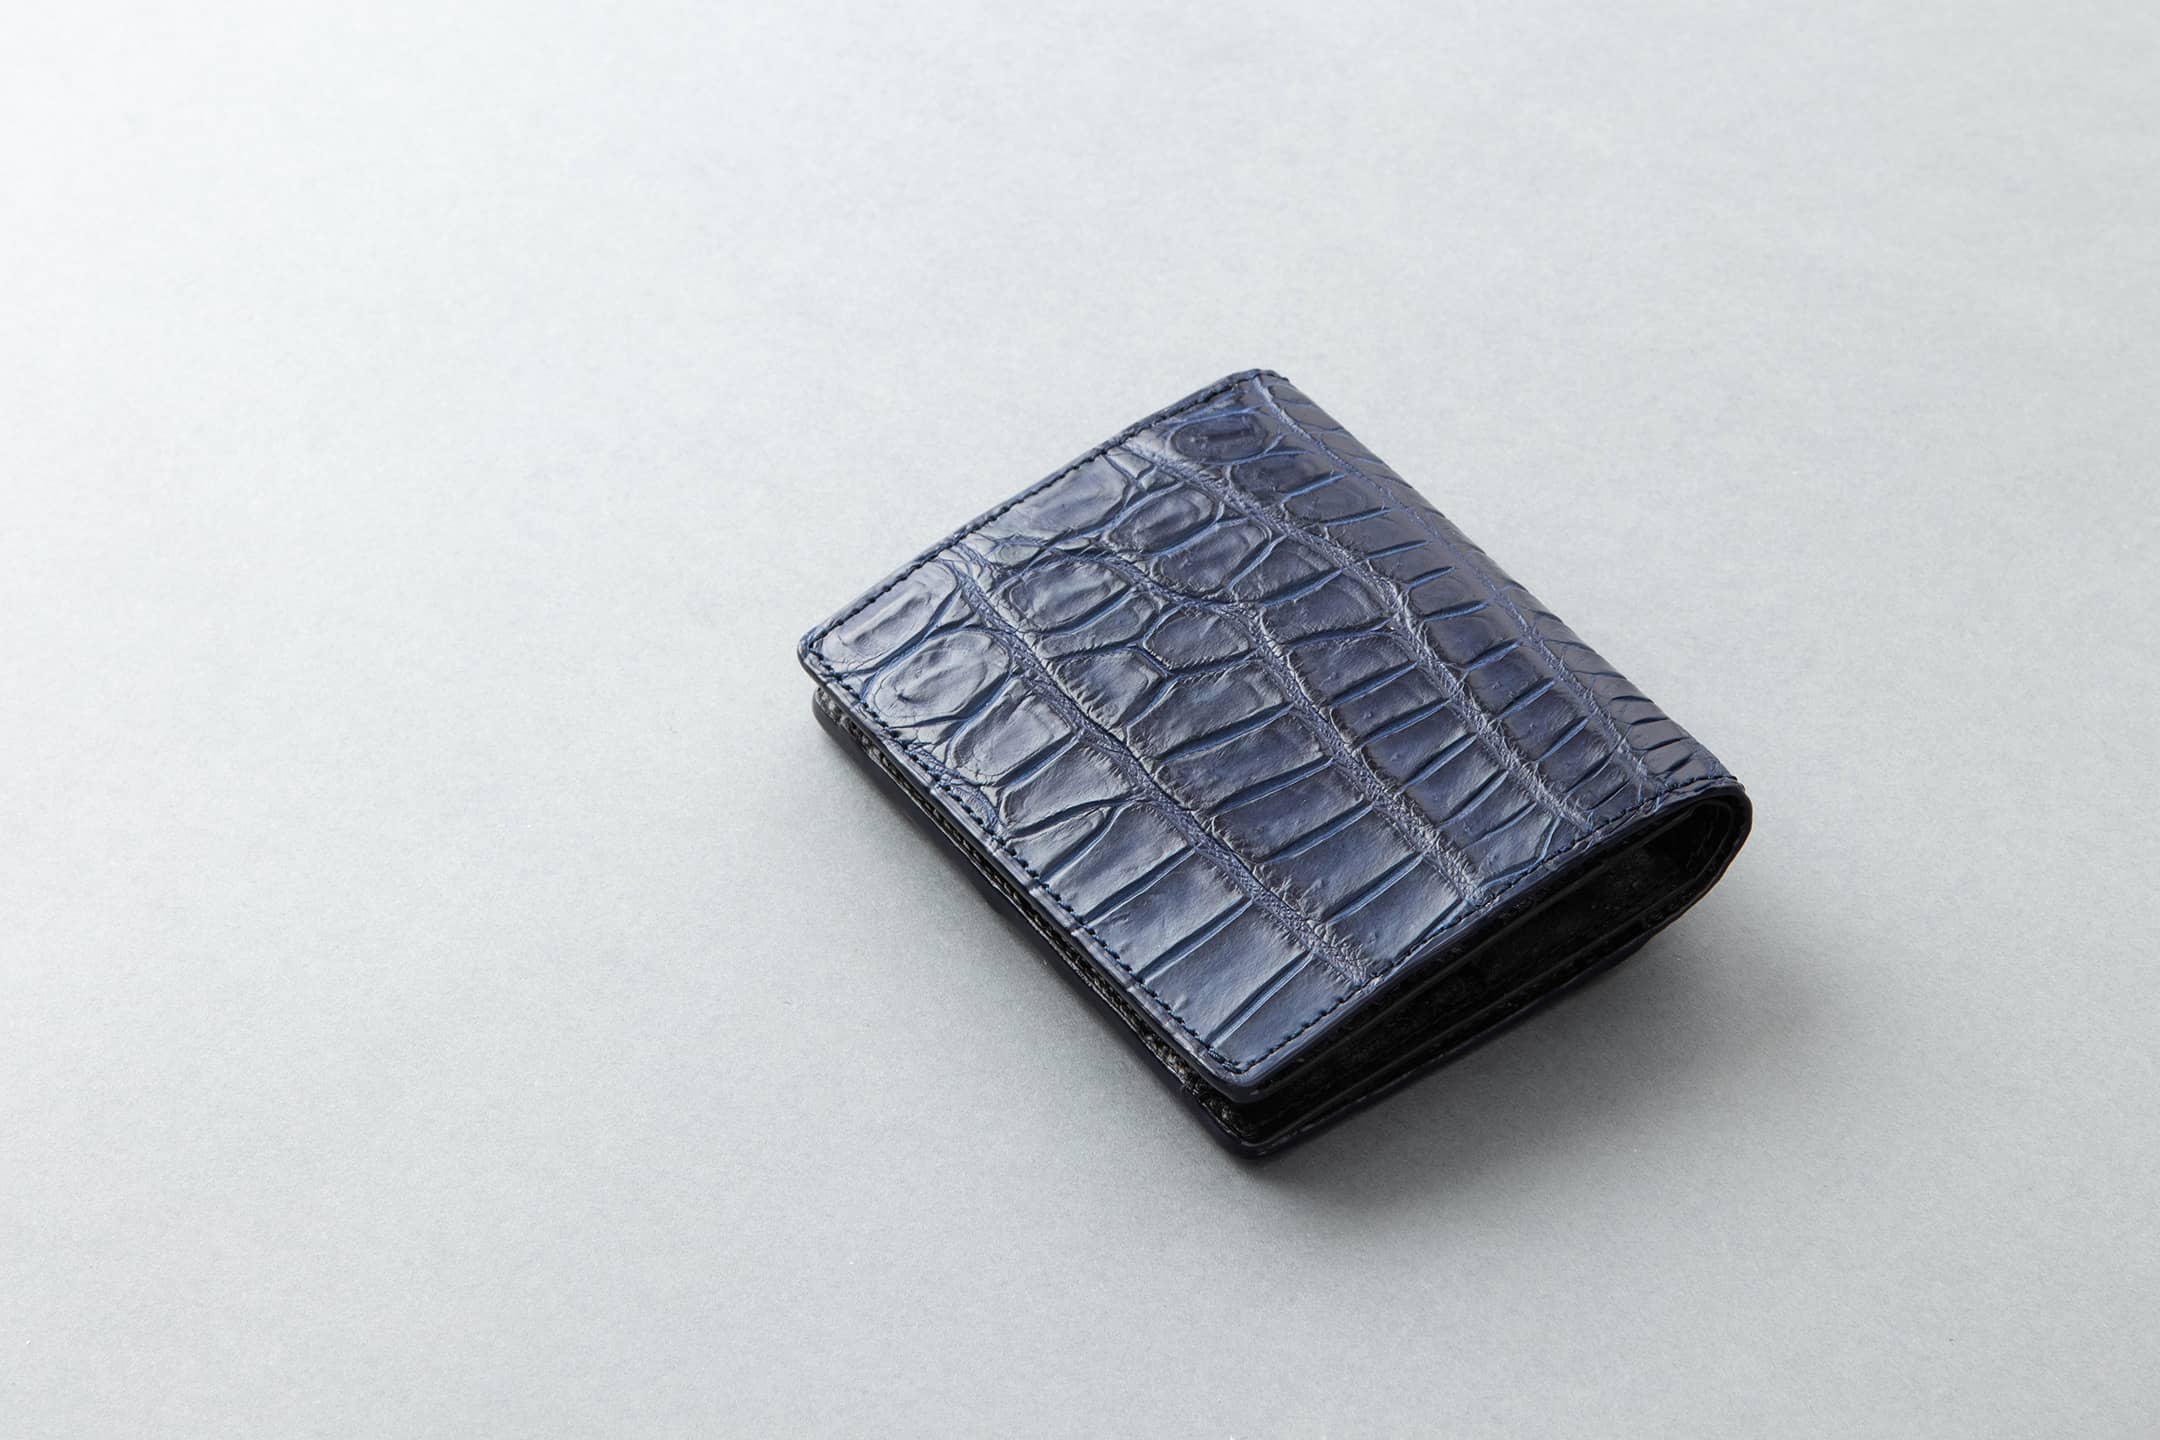 藍染めクロコダイル ミニウォレット | 大人の財布・ ミニ・コンパクト財布 など拘りの日本製ブランドなら Mens Leather Store